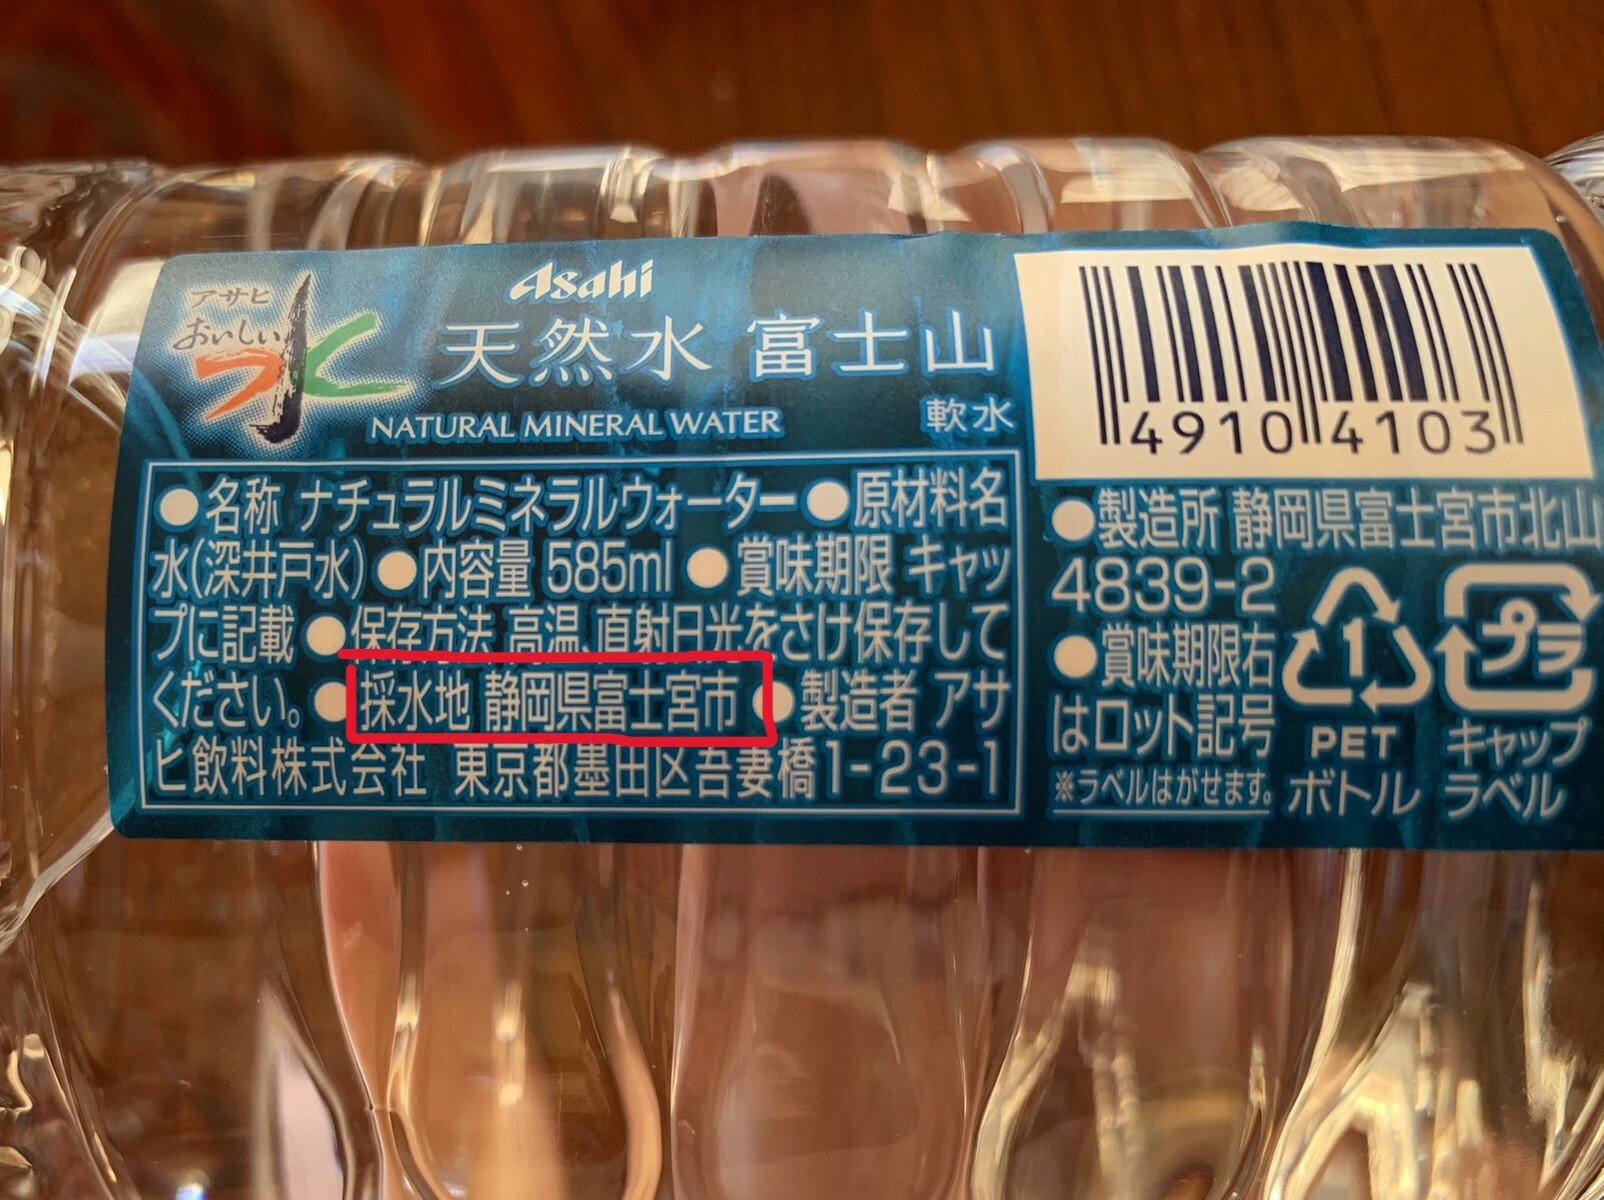 アサヒおいしい水には、採水地が静岡県富士宮市と表記されています